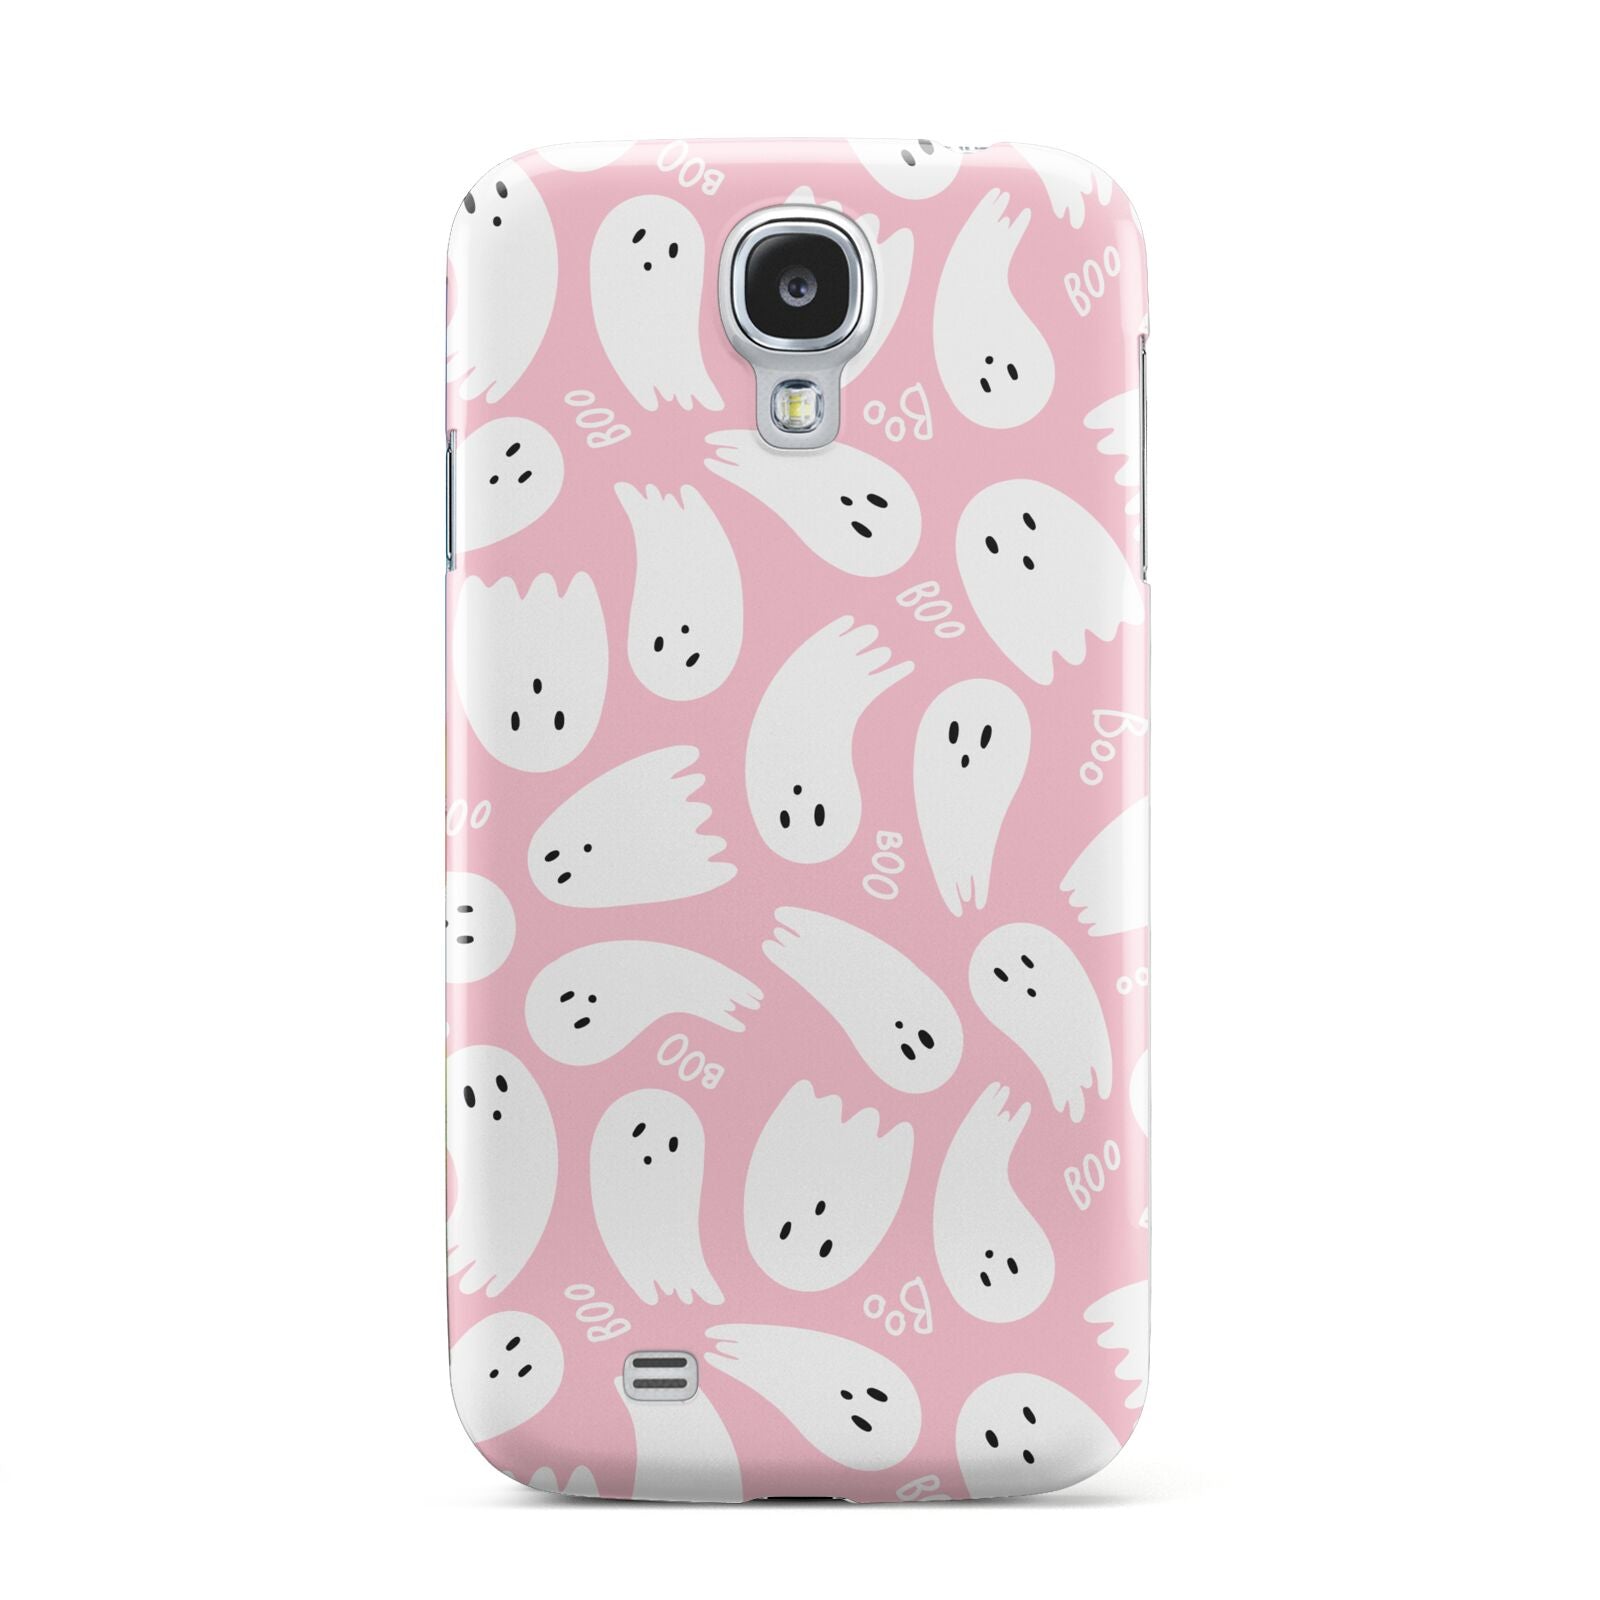 Pink Ghost Samsung Galaxy S4 Case